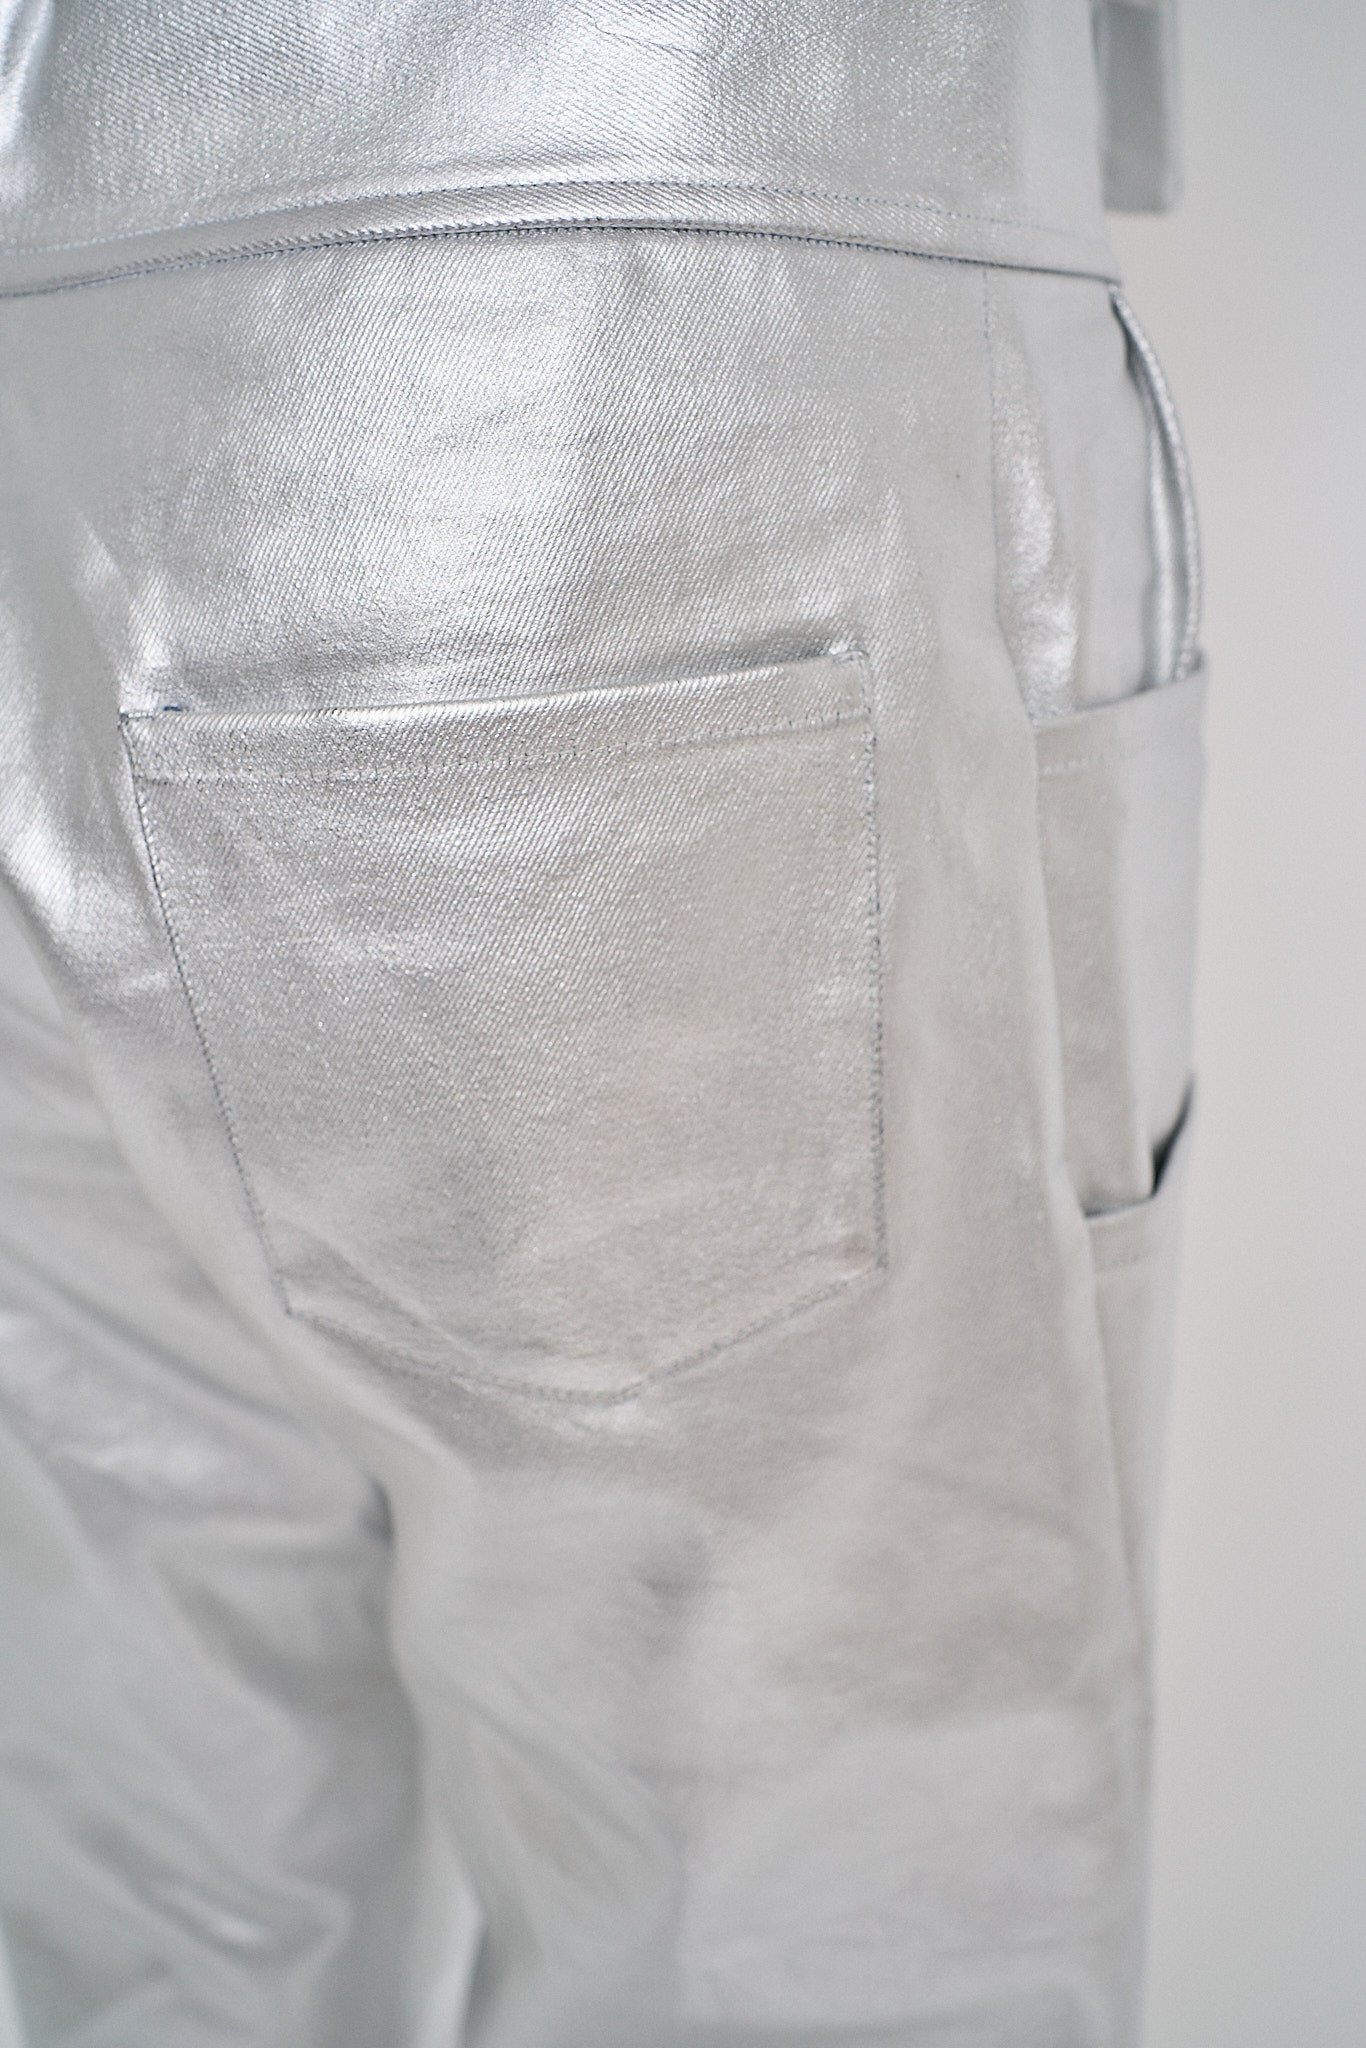 Men's Utility Pant in Silver Denim